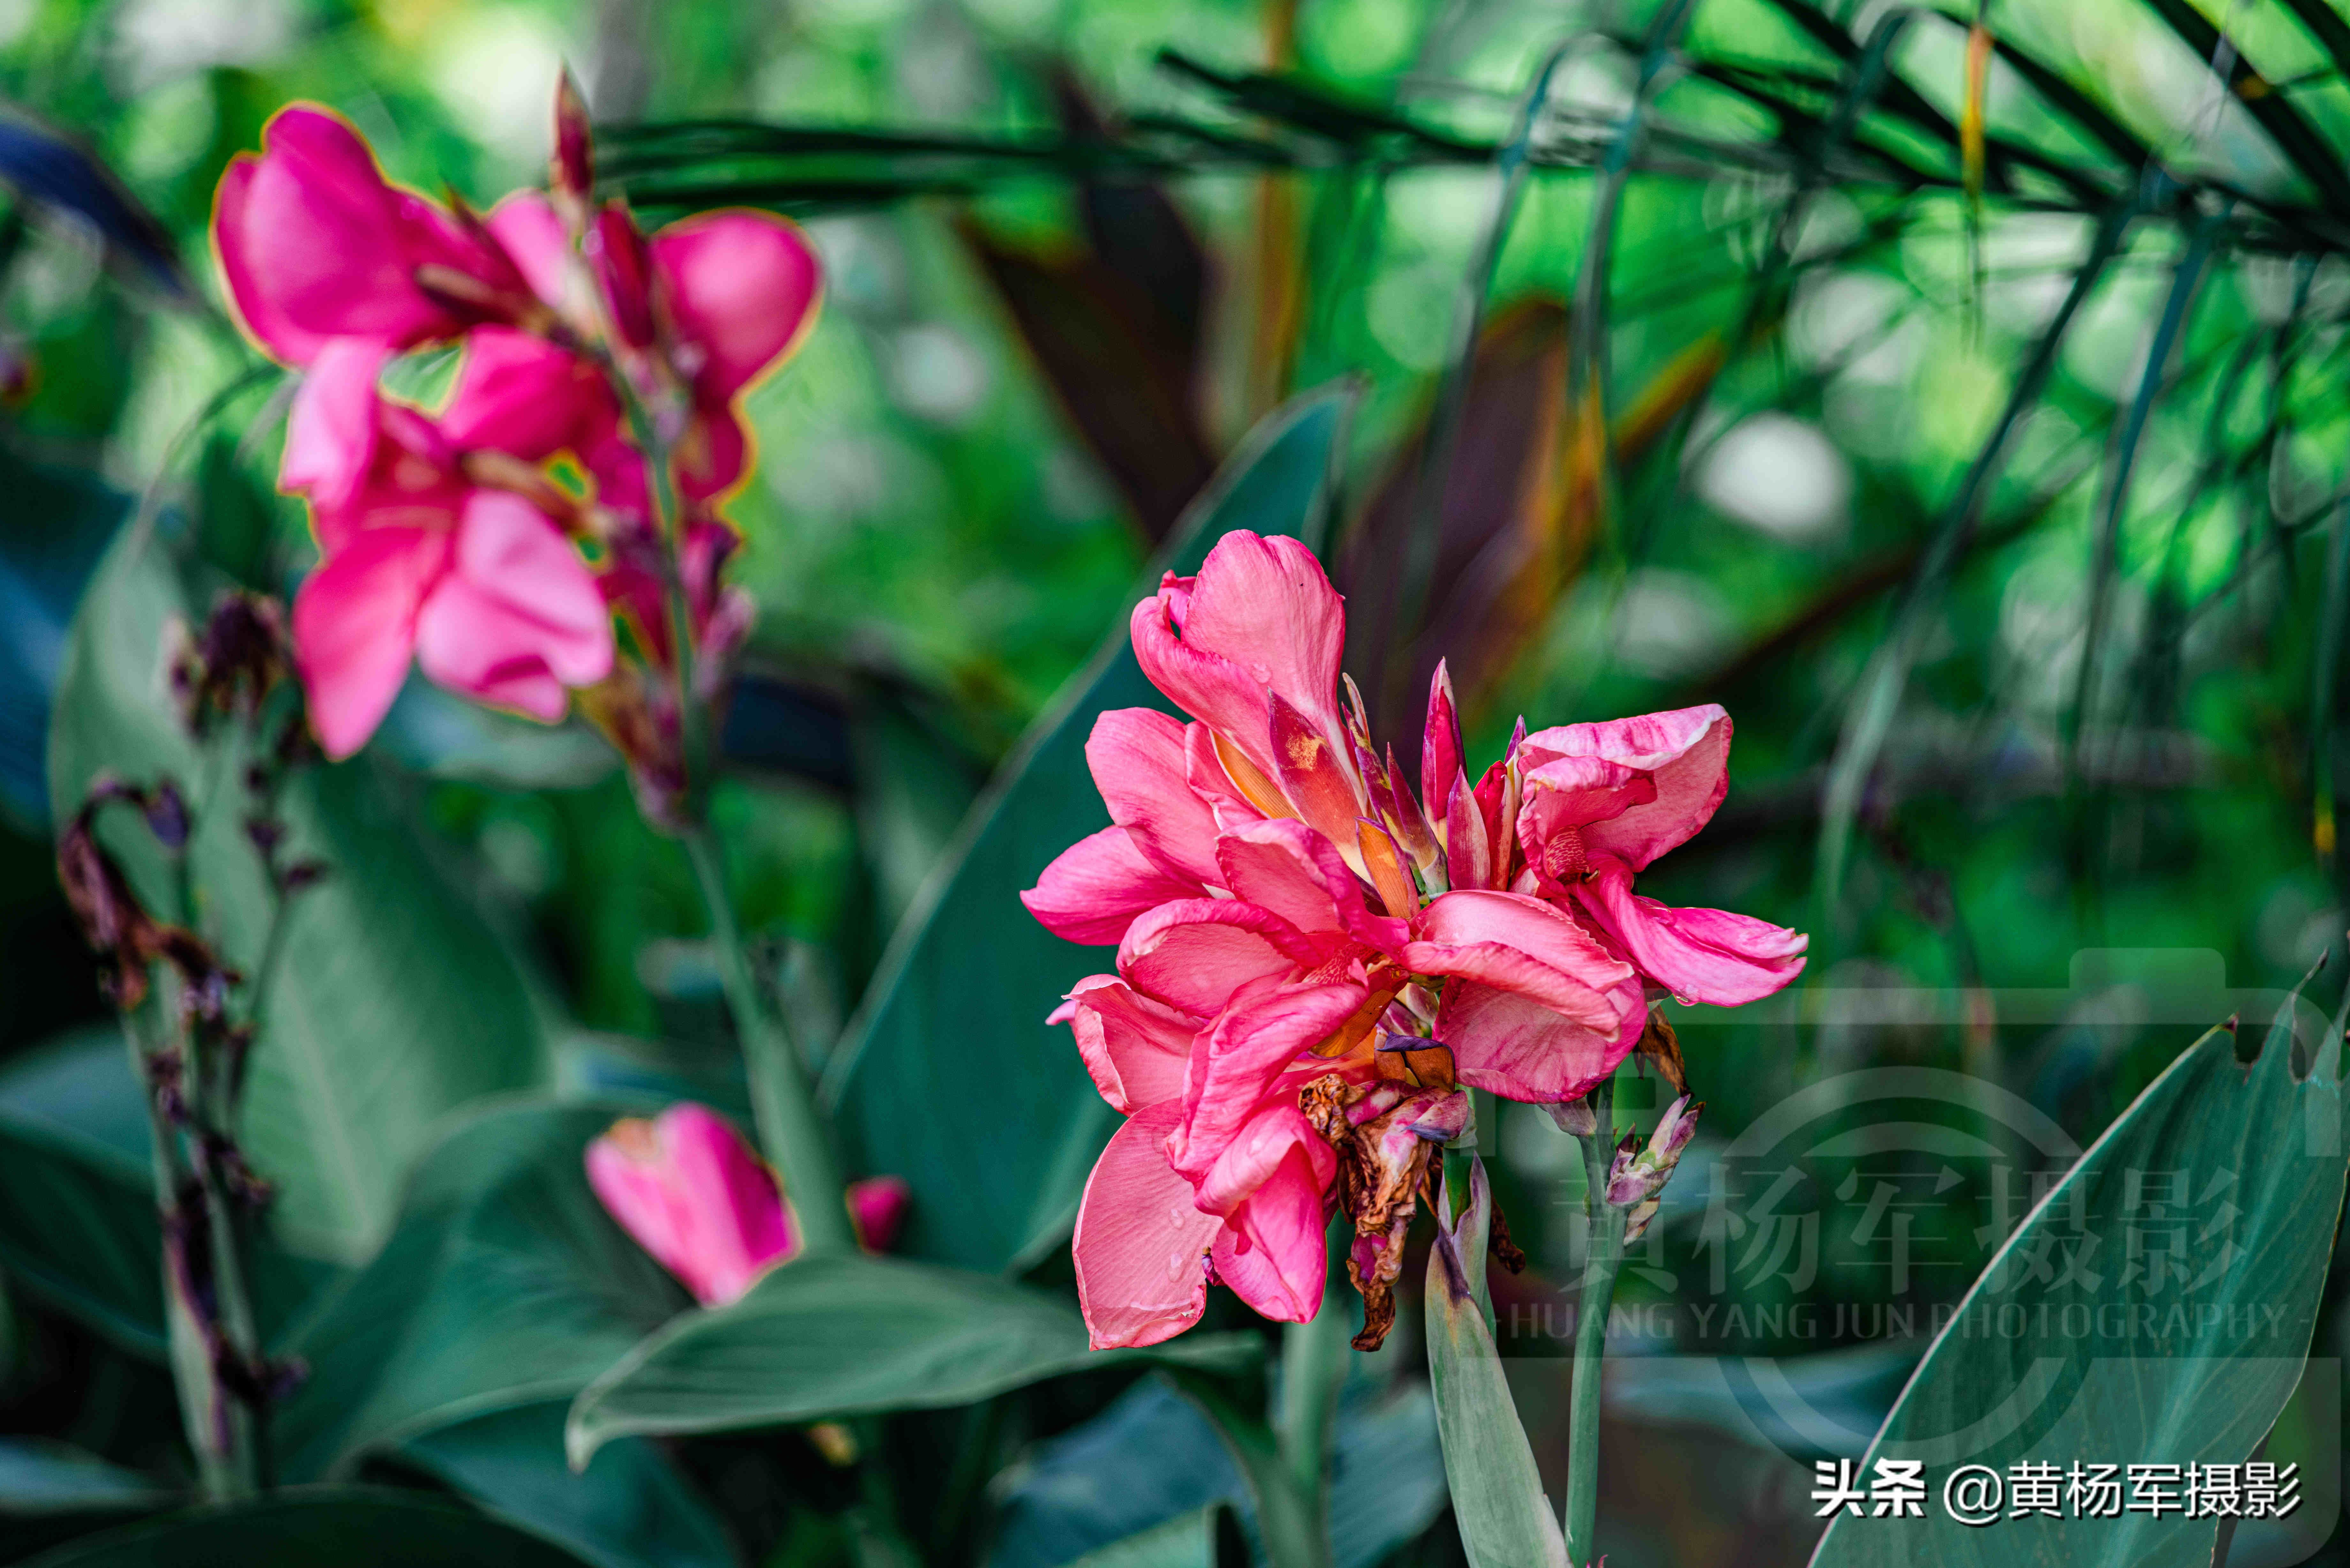 七月紅豔怒放的美人蕉 花紅葉綠的宿根植物非常熟悉 花開絢爛 黃楊軍攝影 Mdeditor